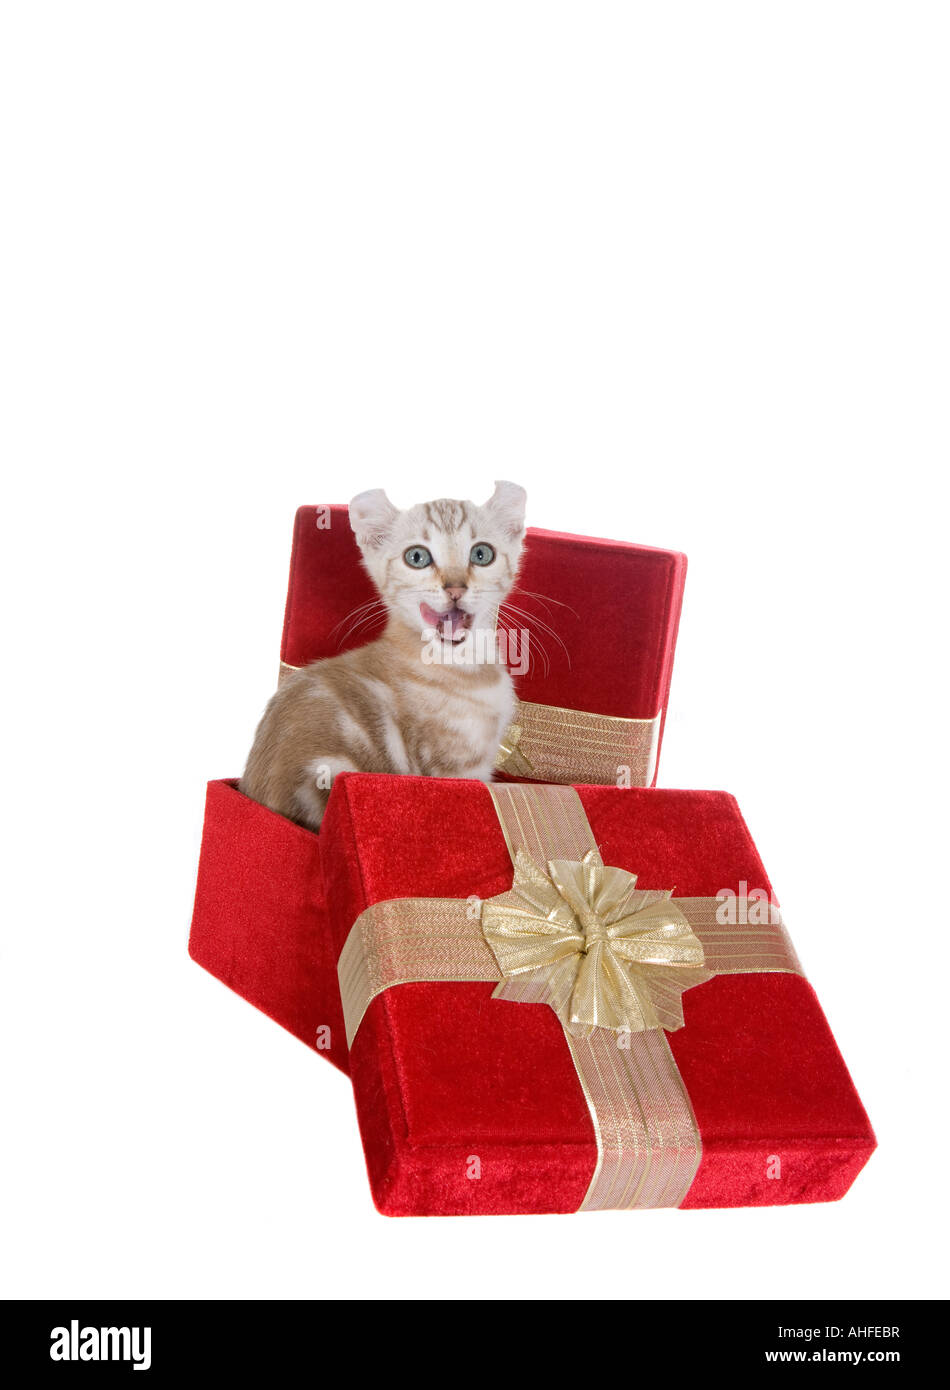 Highlander kitten in Christmas red velvet gift box isolated on white background Stock Photo